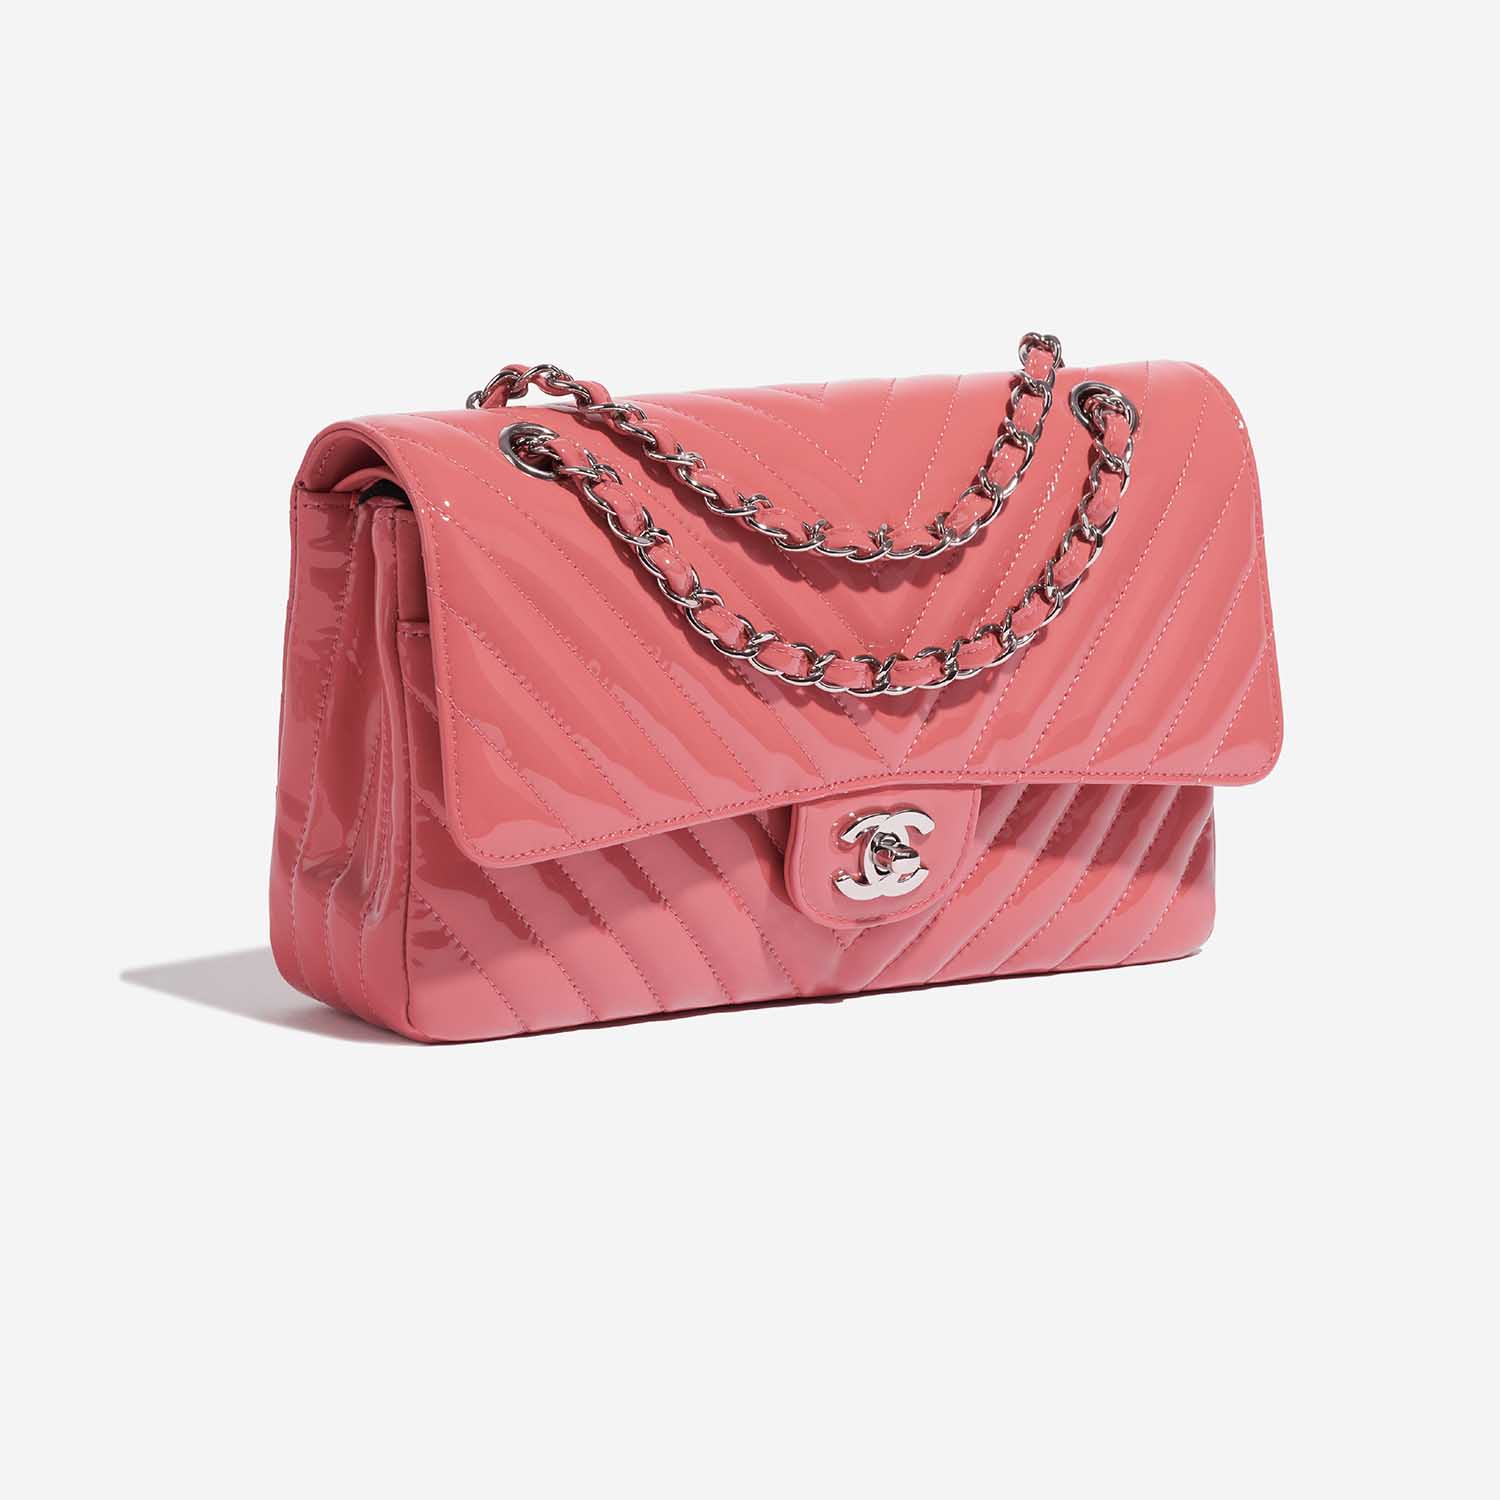 Sac Chanel d'occasion Classique Medium Patent Pink Pink Side Front | Vendez votre sac de créateur sur Saclab.com